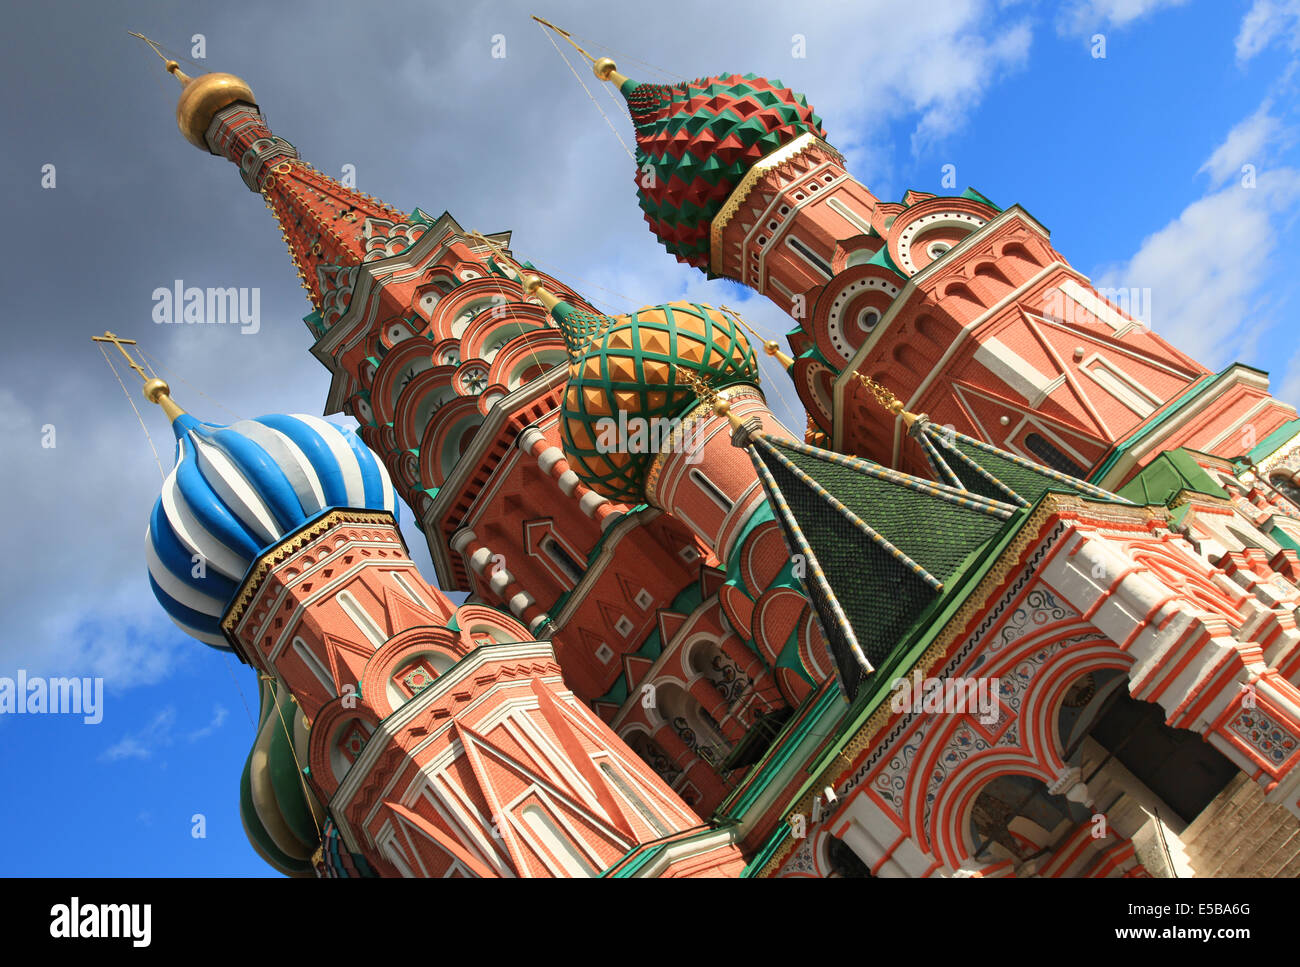 Basilius Kathedrale mit einzigartiger Architektur und bunten Zwiebeln geformt Kuppeln auf dem Roten Platz in Moskau Russland Stockfoto